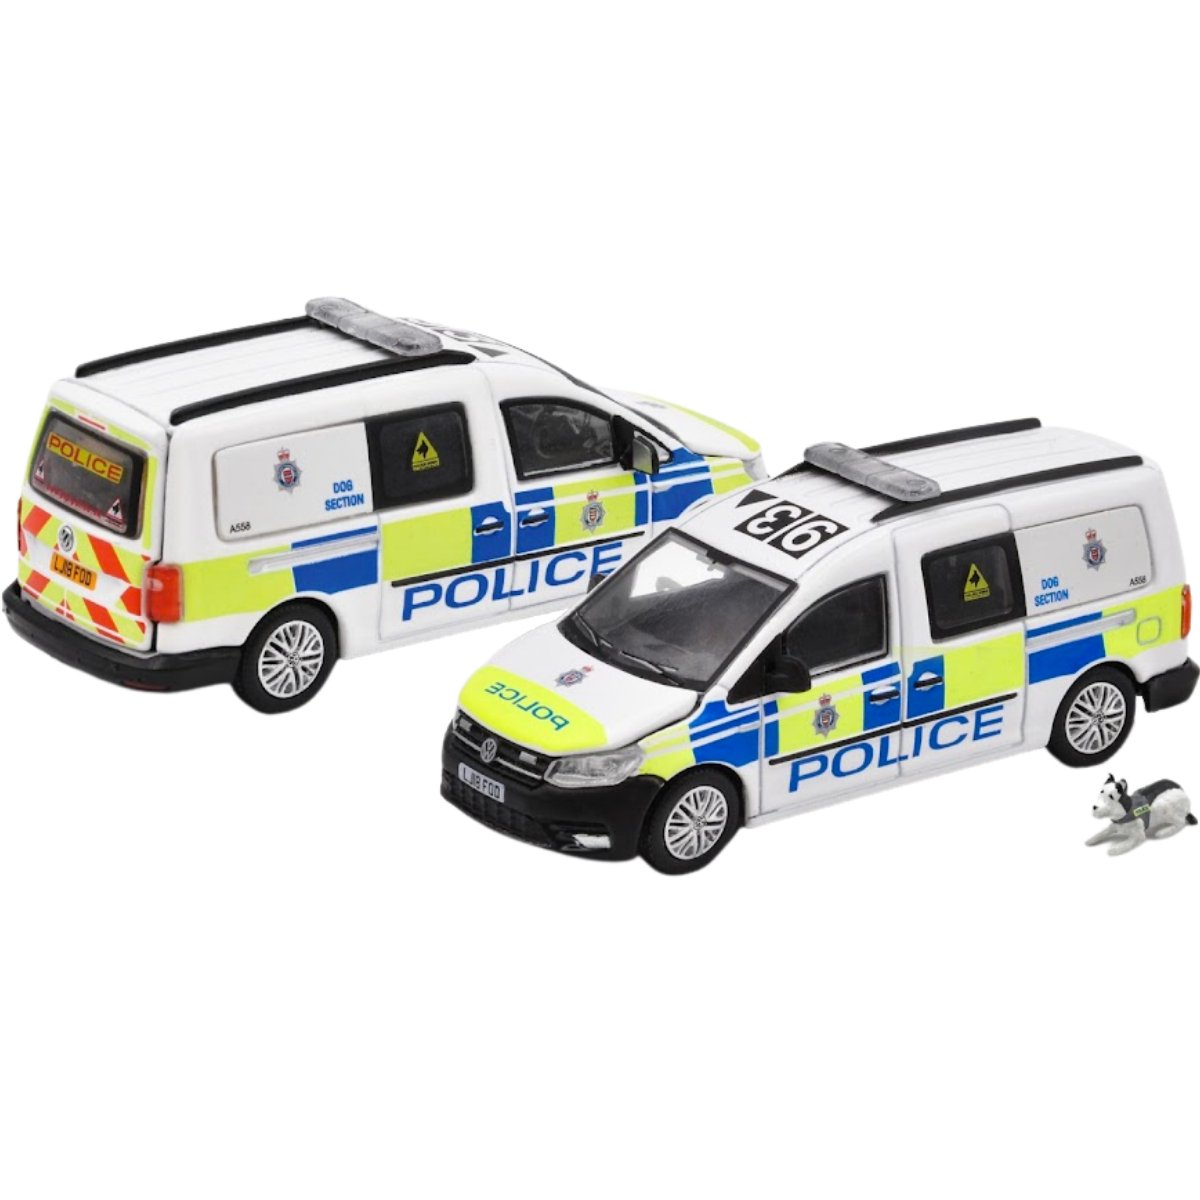 Era Car VW Caddy Maxi - London Police Police Dog Unit (1:64 Scale)